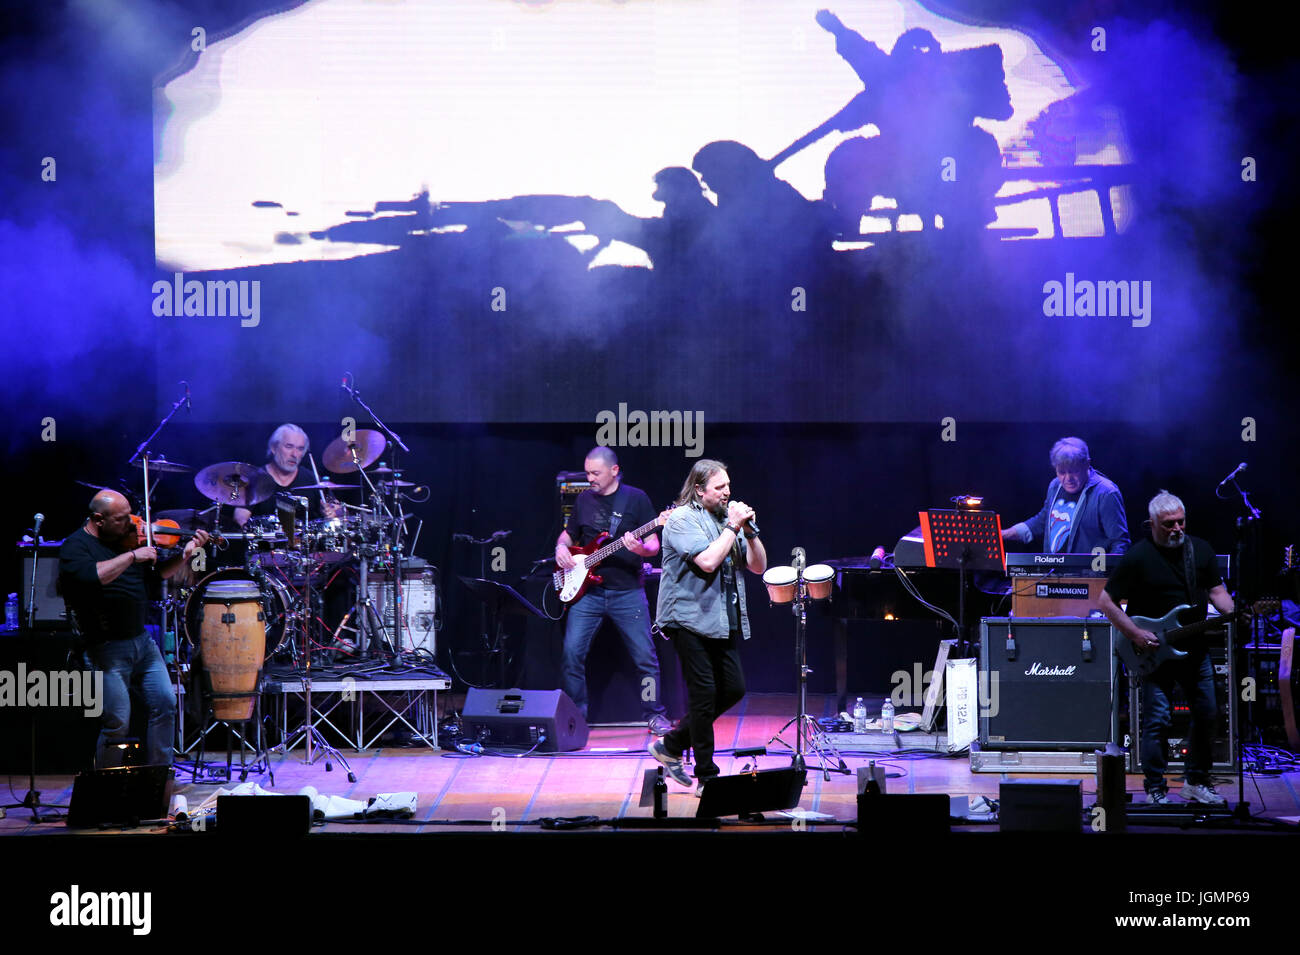 Bassano del Grappa, VI, Italien - 29. April 2017: Nomadi eine italienische Band auf der Bühne während der live-Konzert in Italien Stockfoto